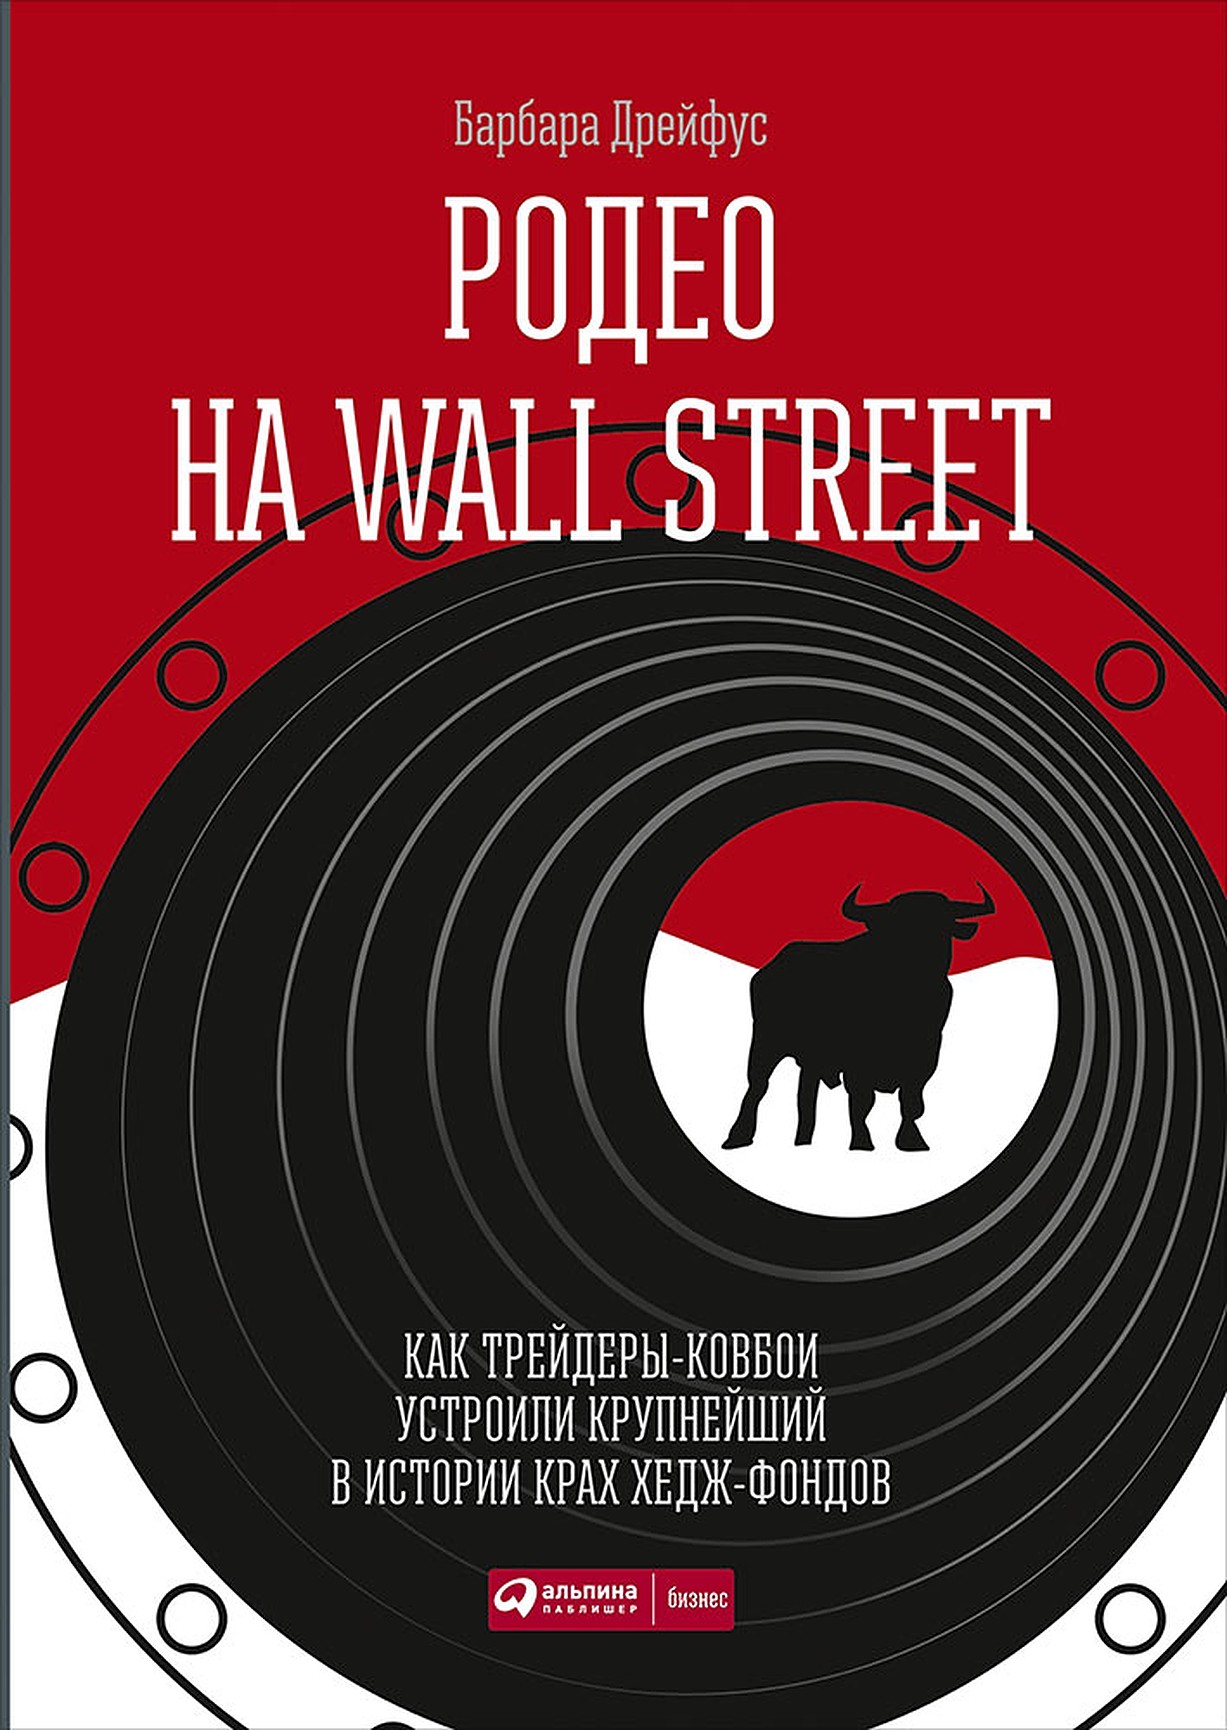 Родео на Wall Street обложка.